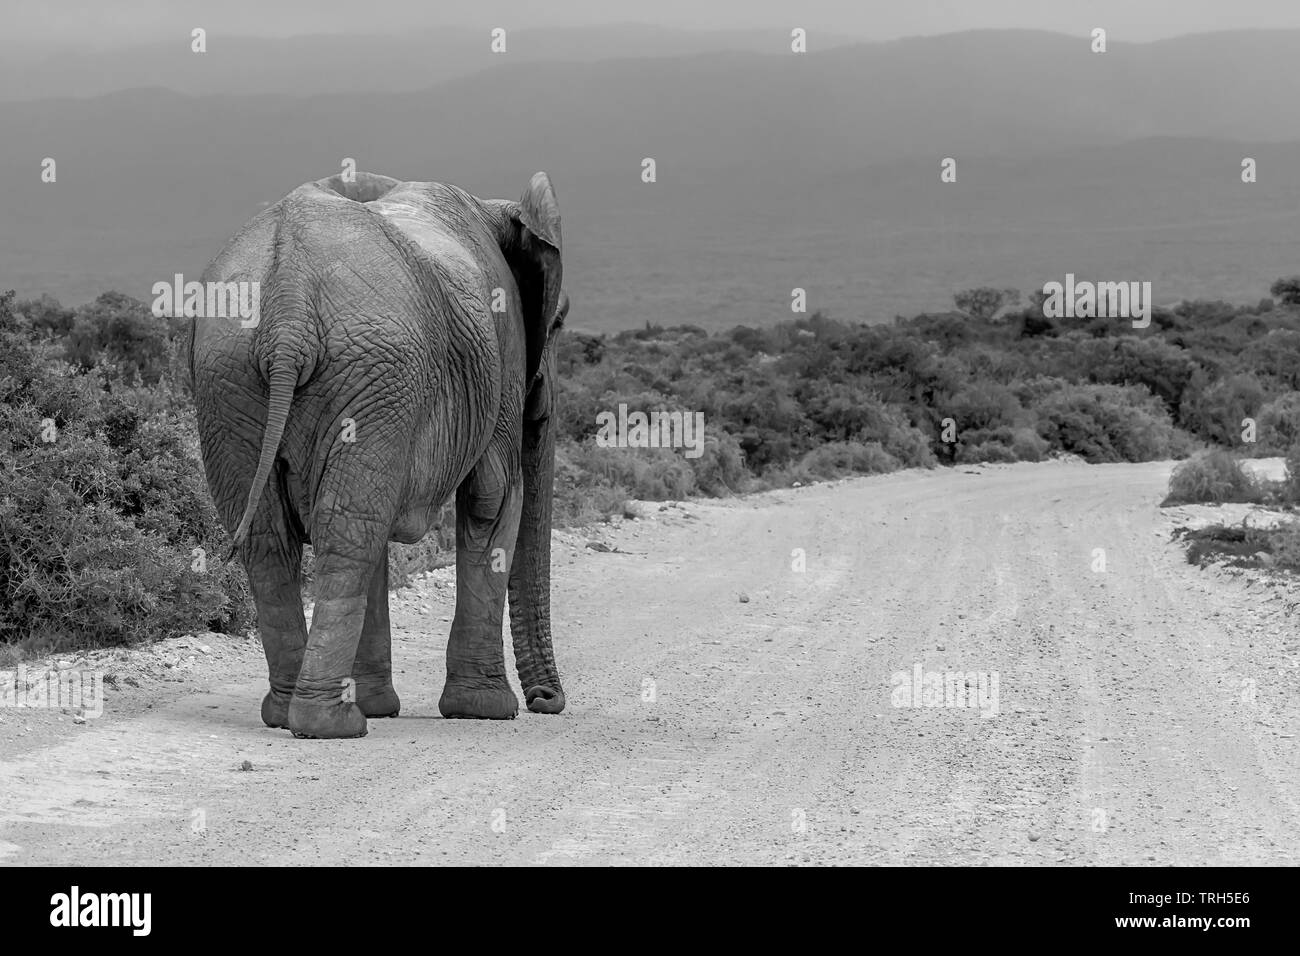 Un éléphant solitaire, Loxodonta africana marchant sur une route de gravier, Addo Elephant Park, Province orientale du Cap, Afrique du Sud en monochrome Banque D'Images